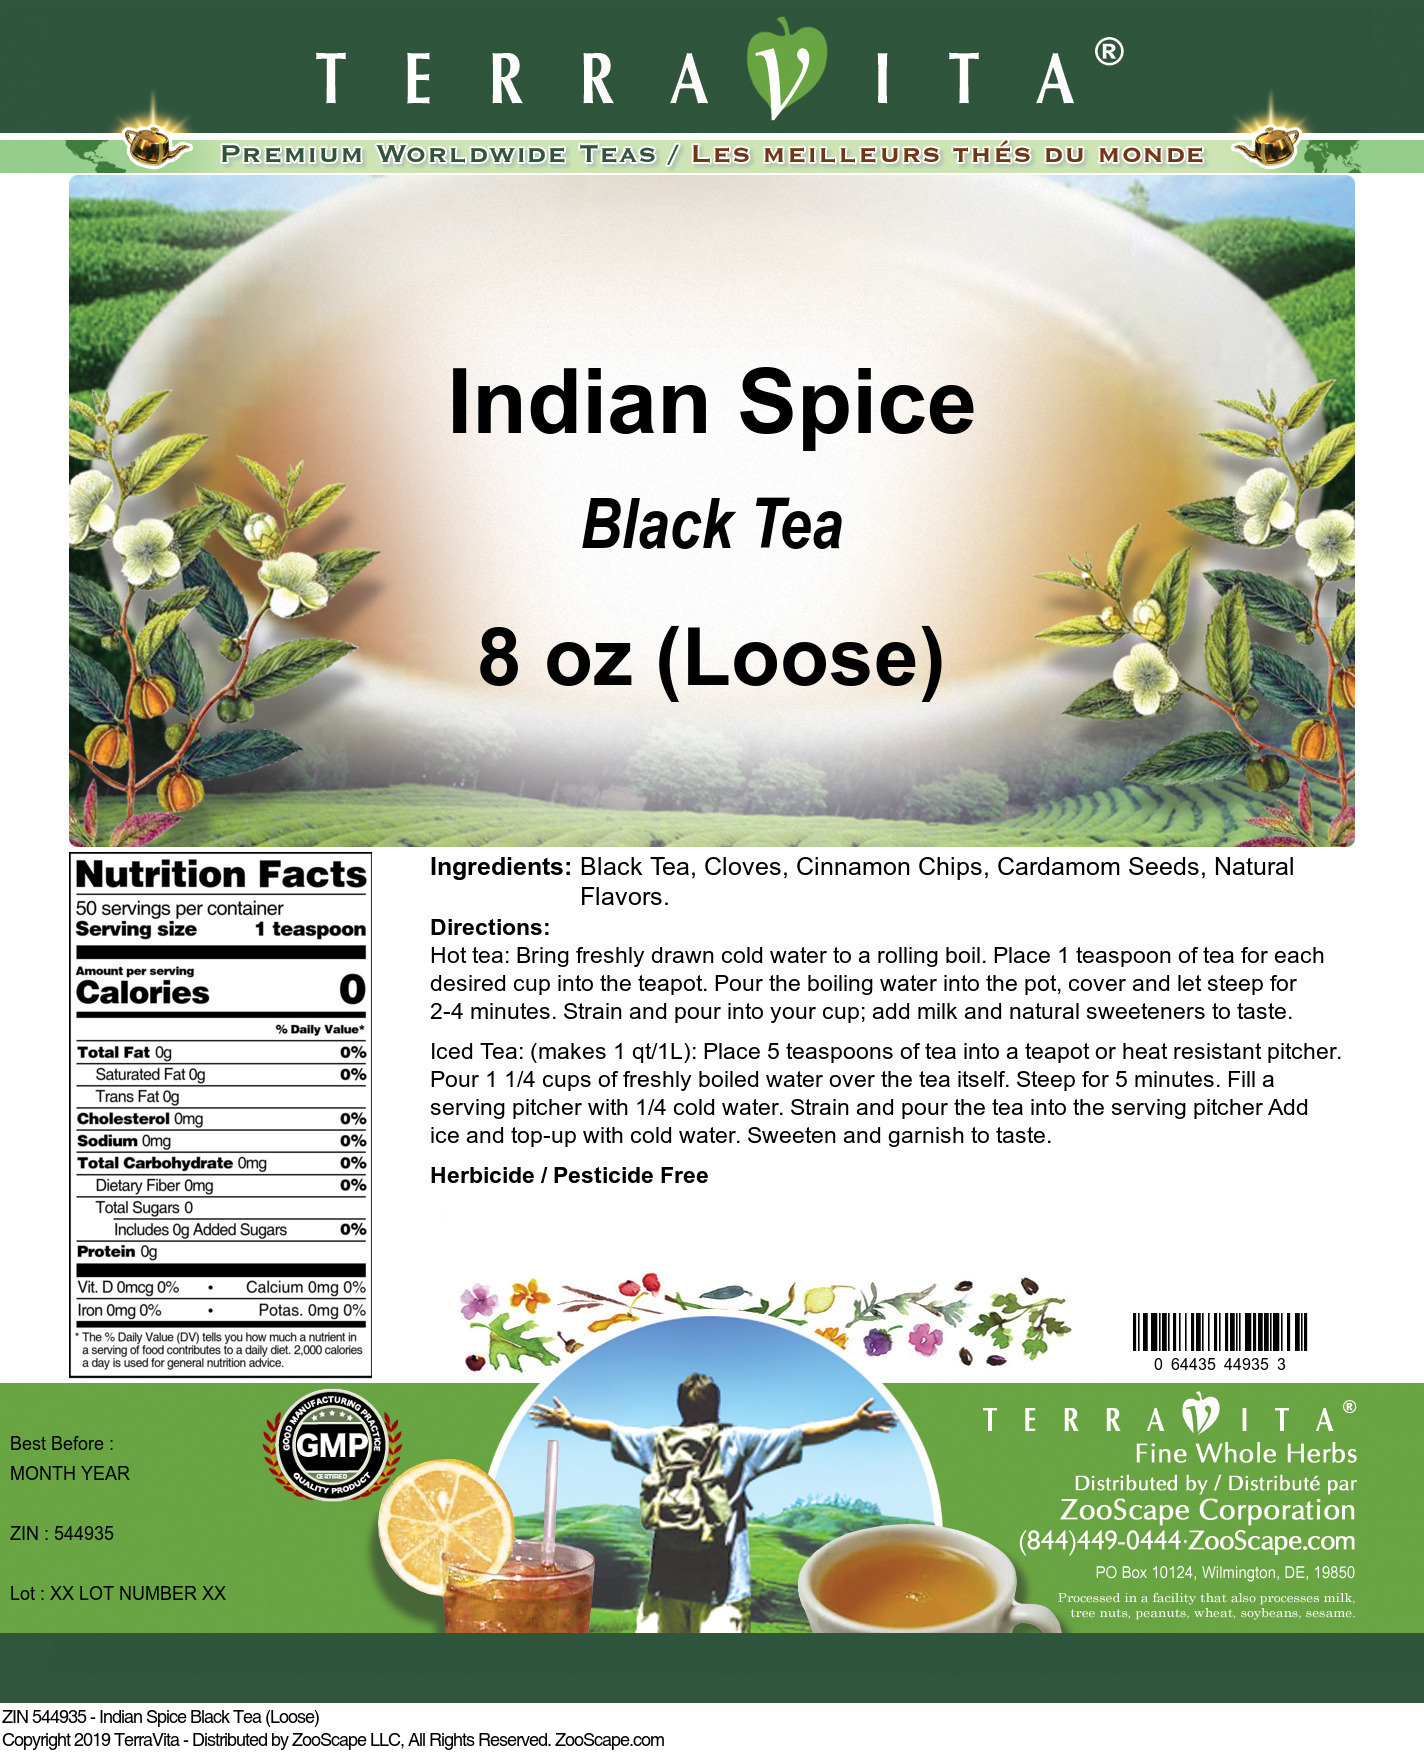 Indian Spice Black Tea (Loose) - Label